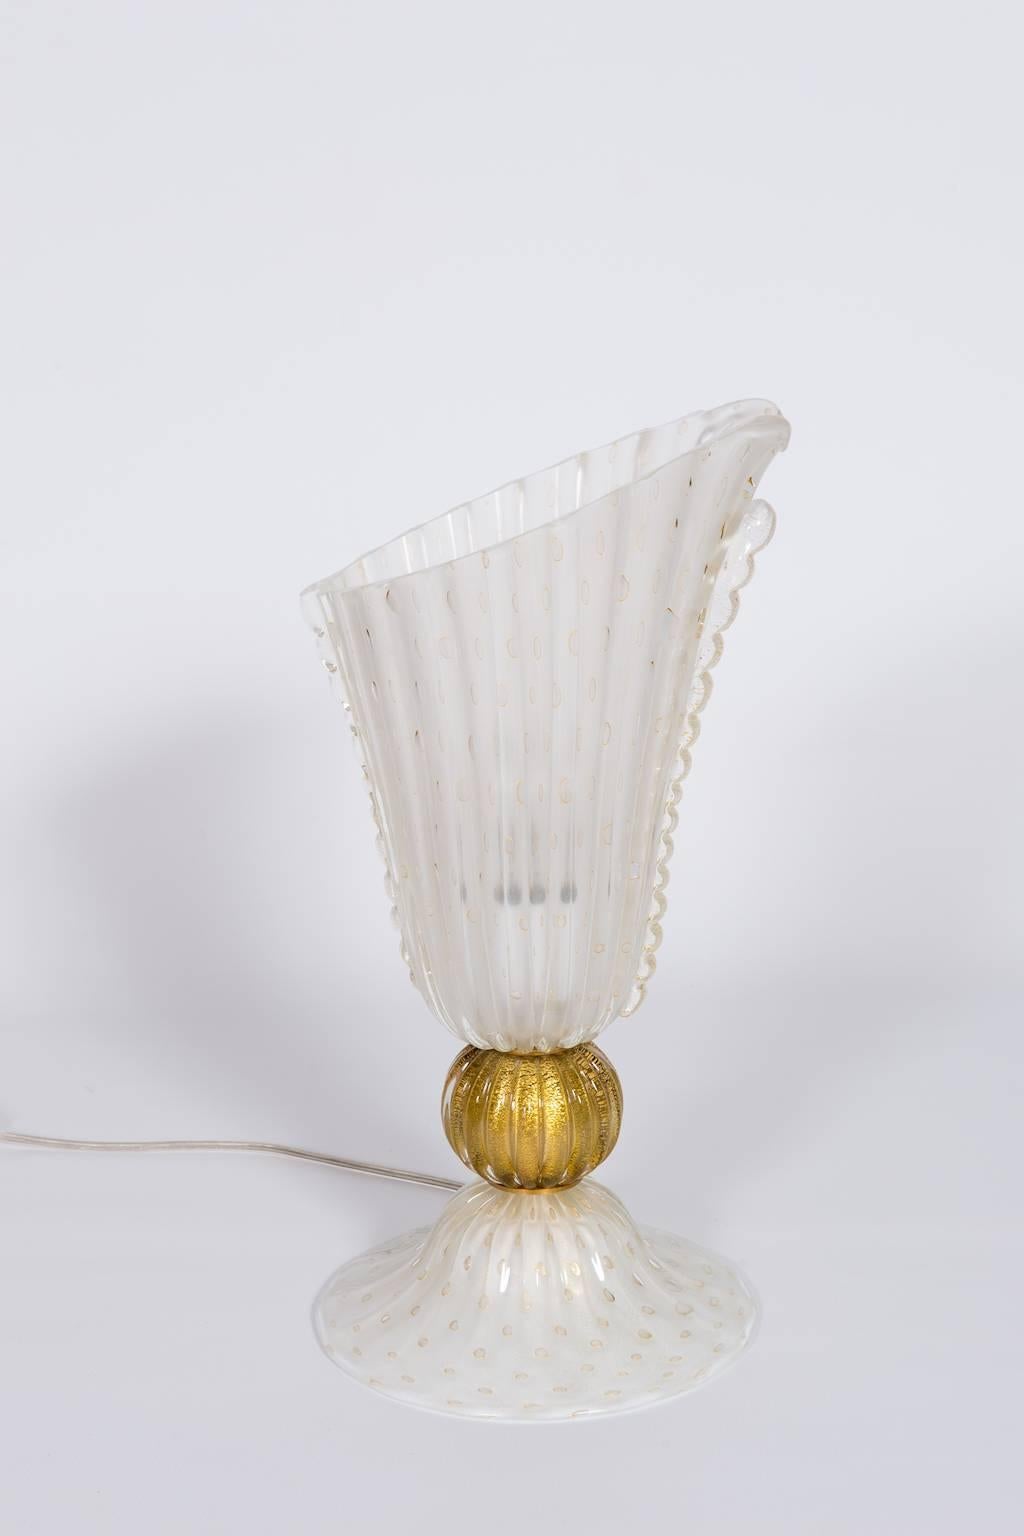 Lampe de bureau italienne unique en verre de Murano soufflé, de couleur blanche et avec des finitions en or 24 carats. 
Cette œuvre d'art exceptionnelle a été entièrement conçue et fabriquée à la main sur l'île vénitienne de Murano en Italie dans